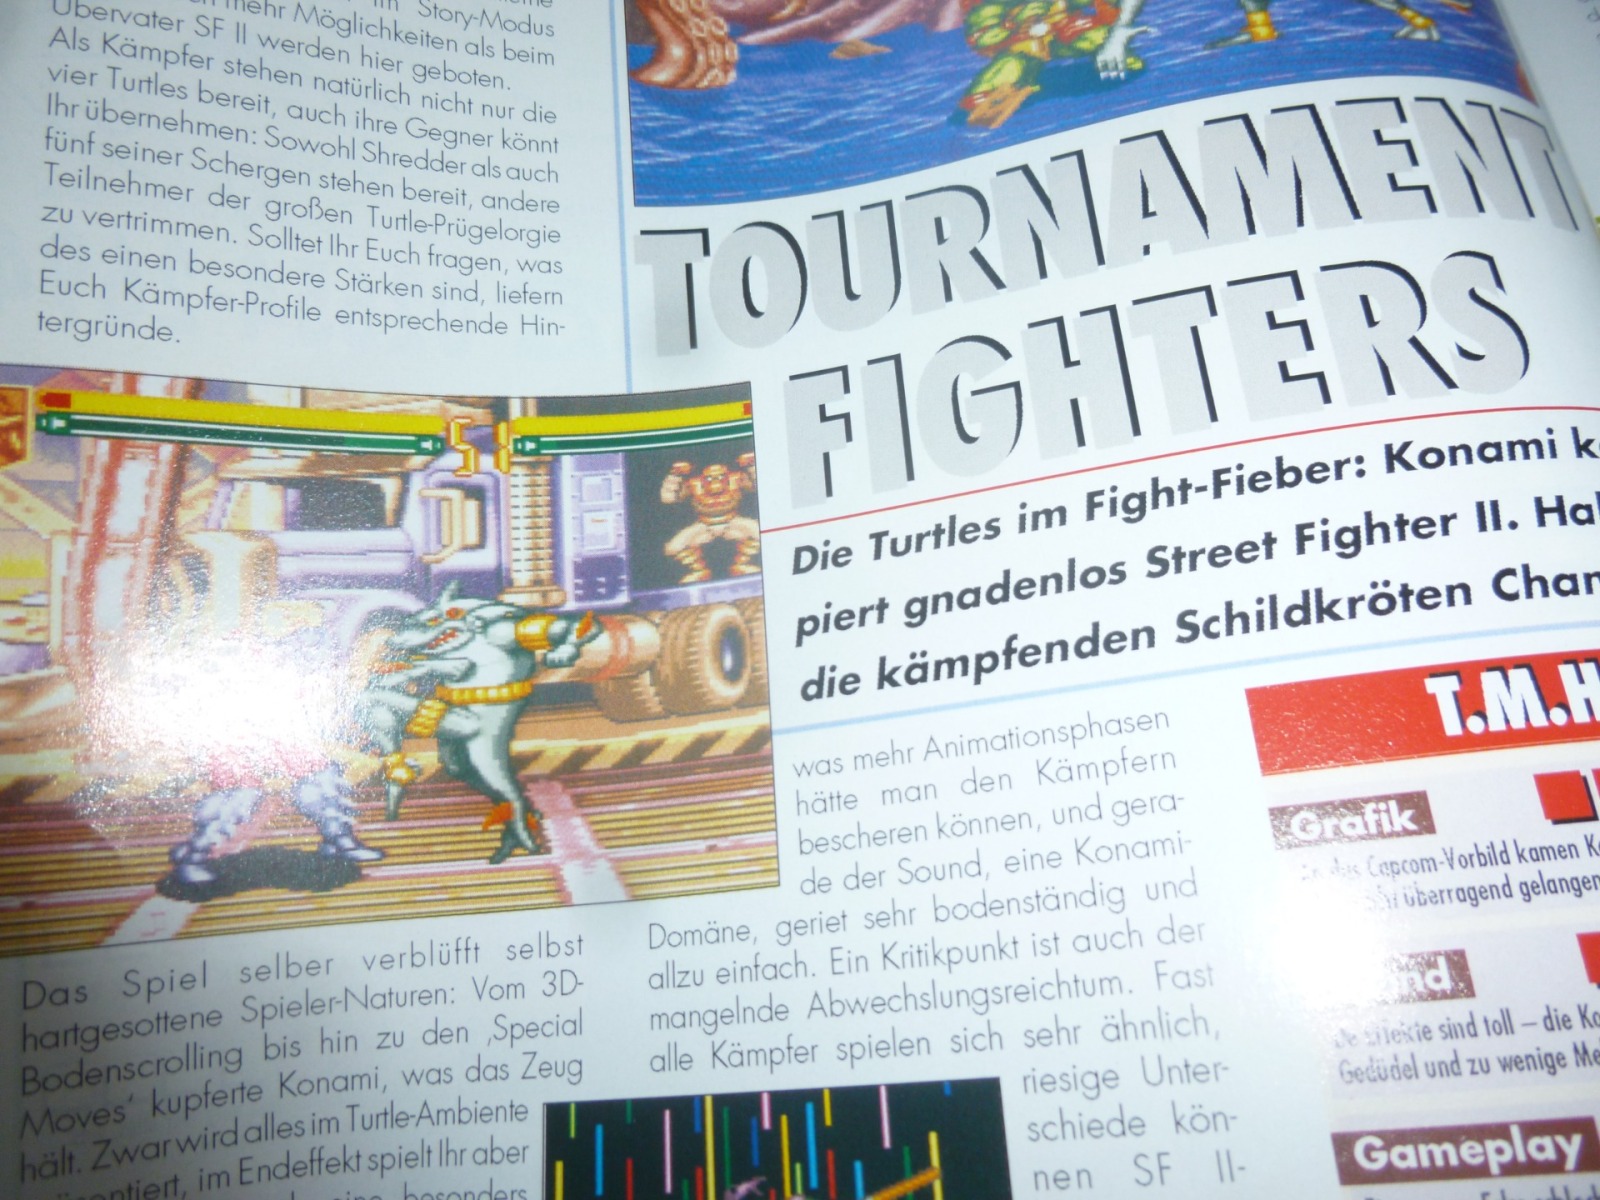 TOTAL Das unabhängige Magazin - 100 Nintendo - Ausgabe 12/93 1993 11